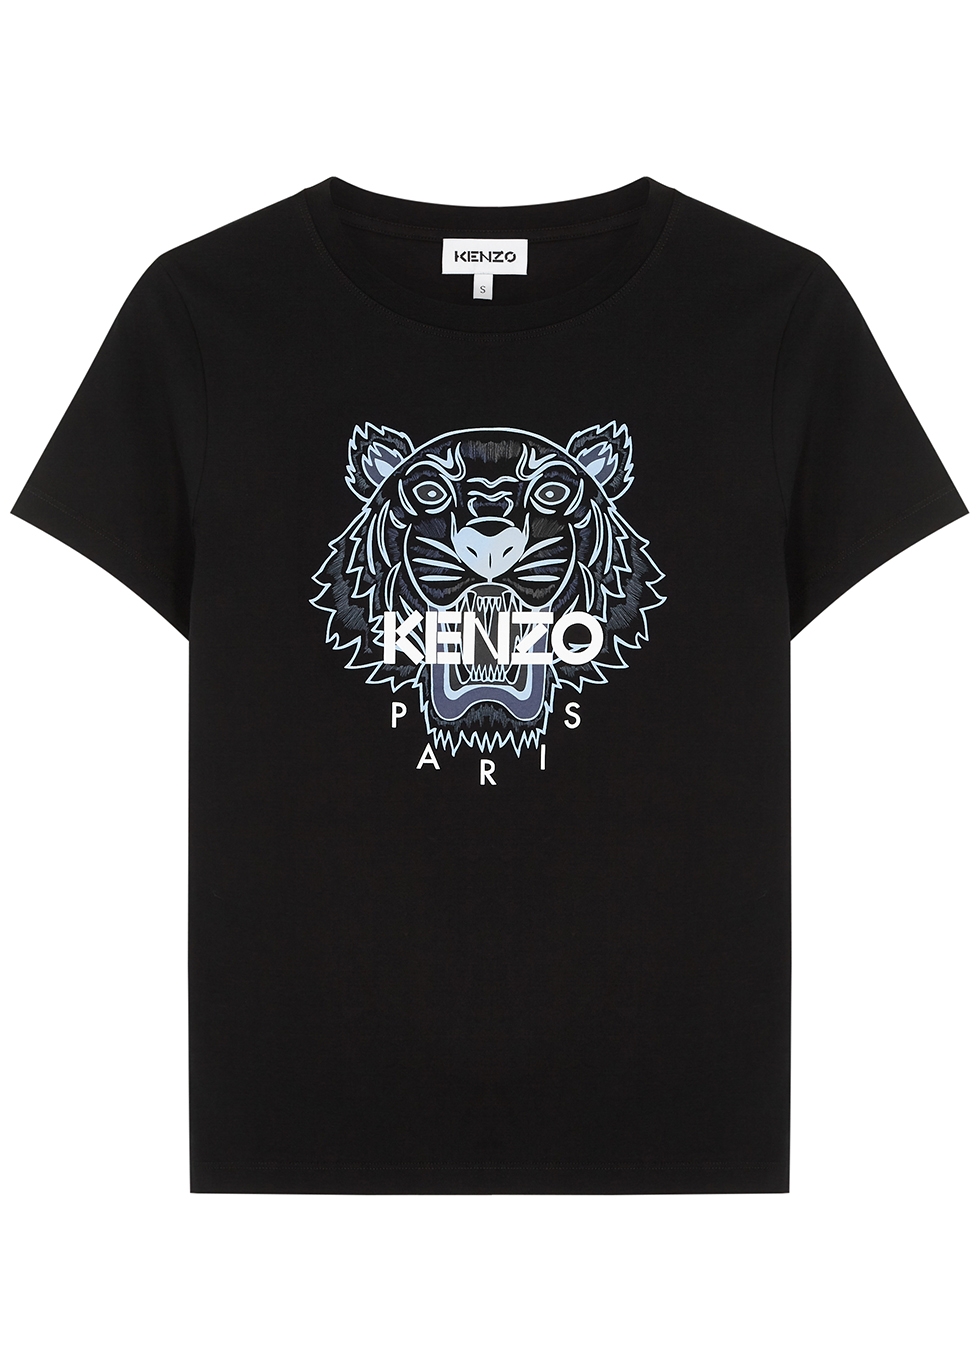 black tiger print shirt